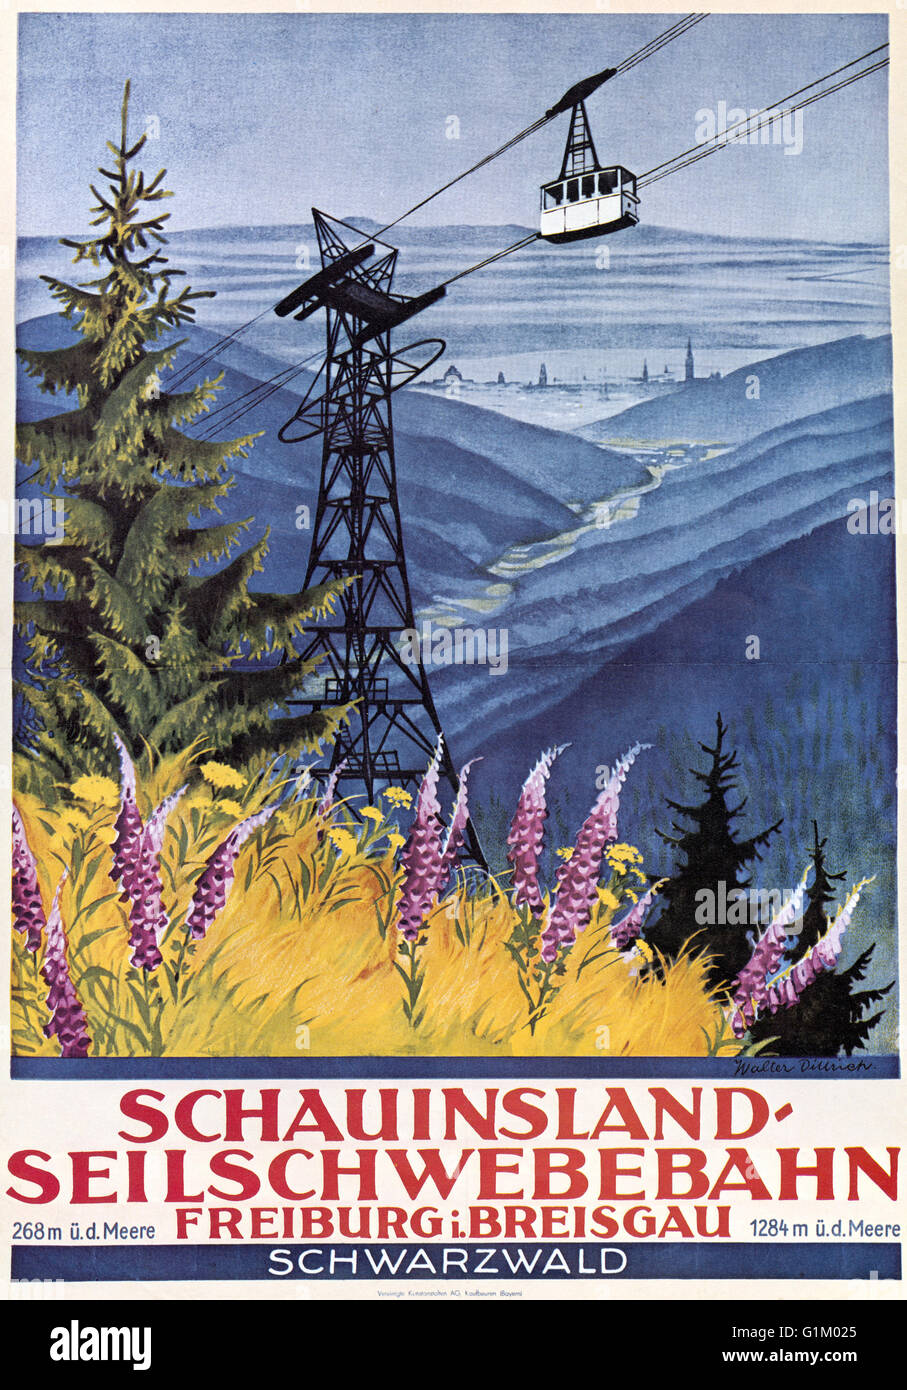 Reisen POSTER, c1920.  Deutsche Plakat Werbung für die Seilbahn auf den Schauinsland Berg im Schwarzwald. Lithographie, c1920s. Stockfoto